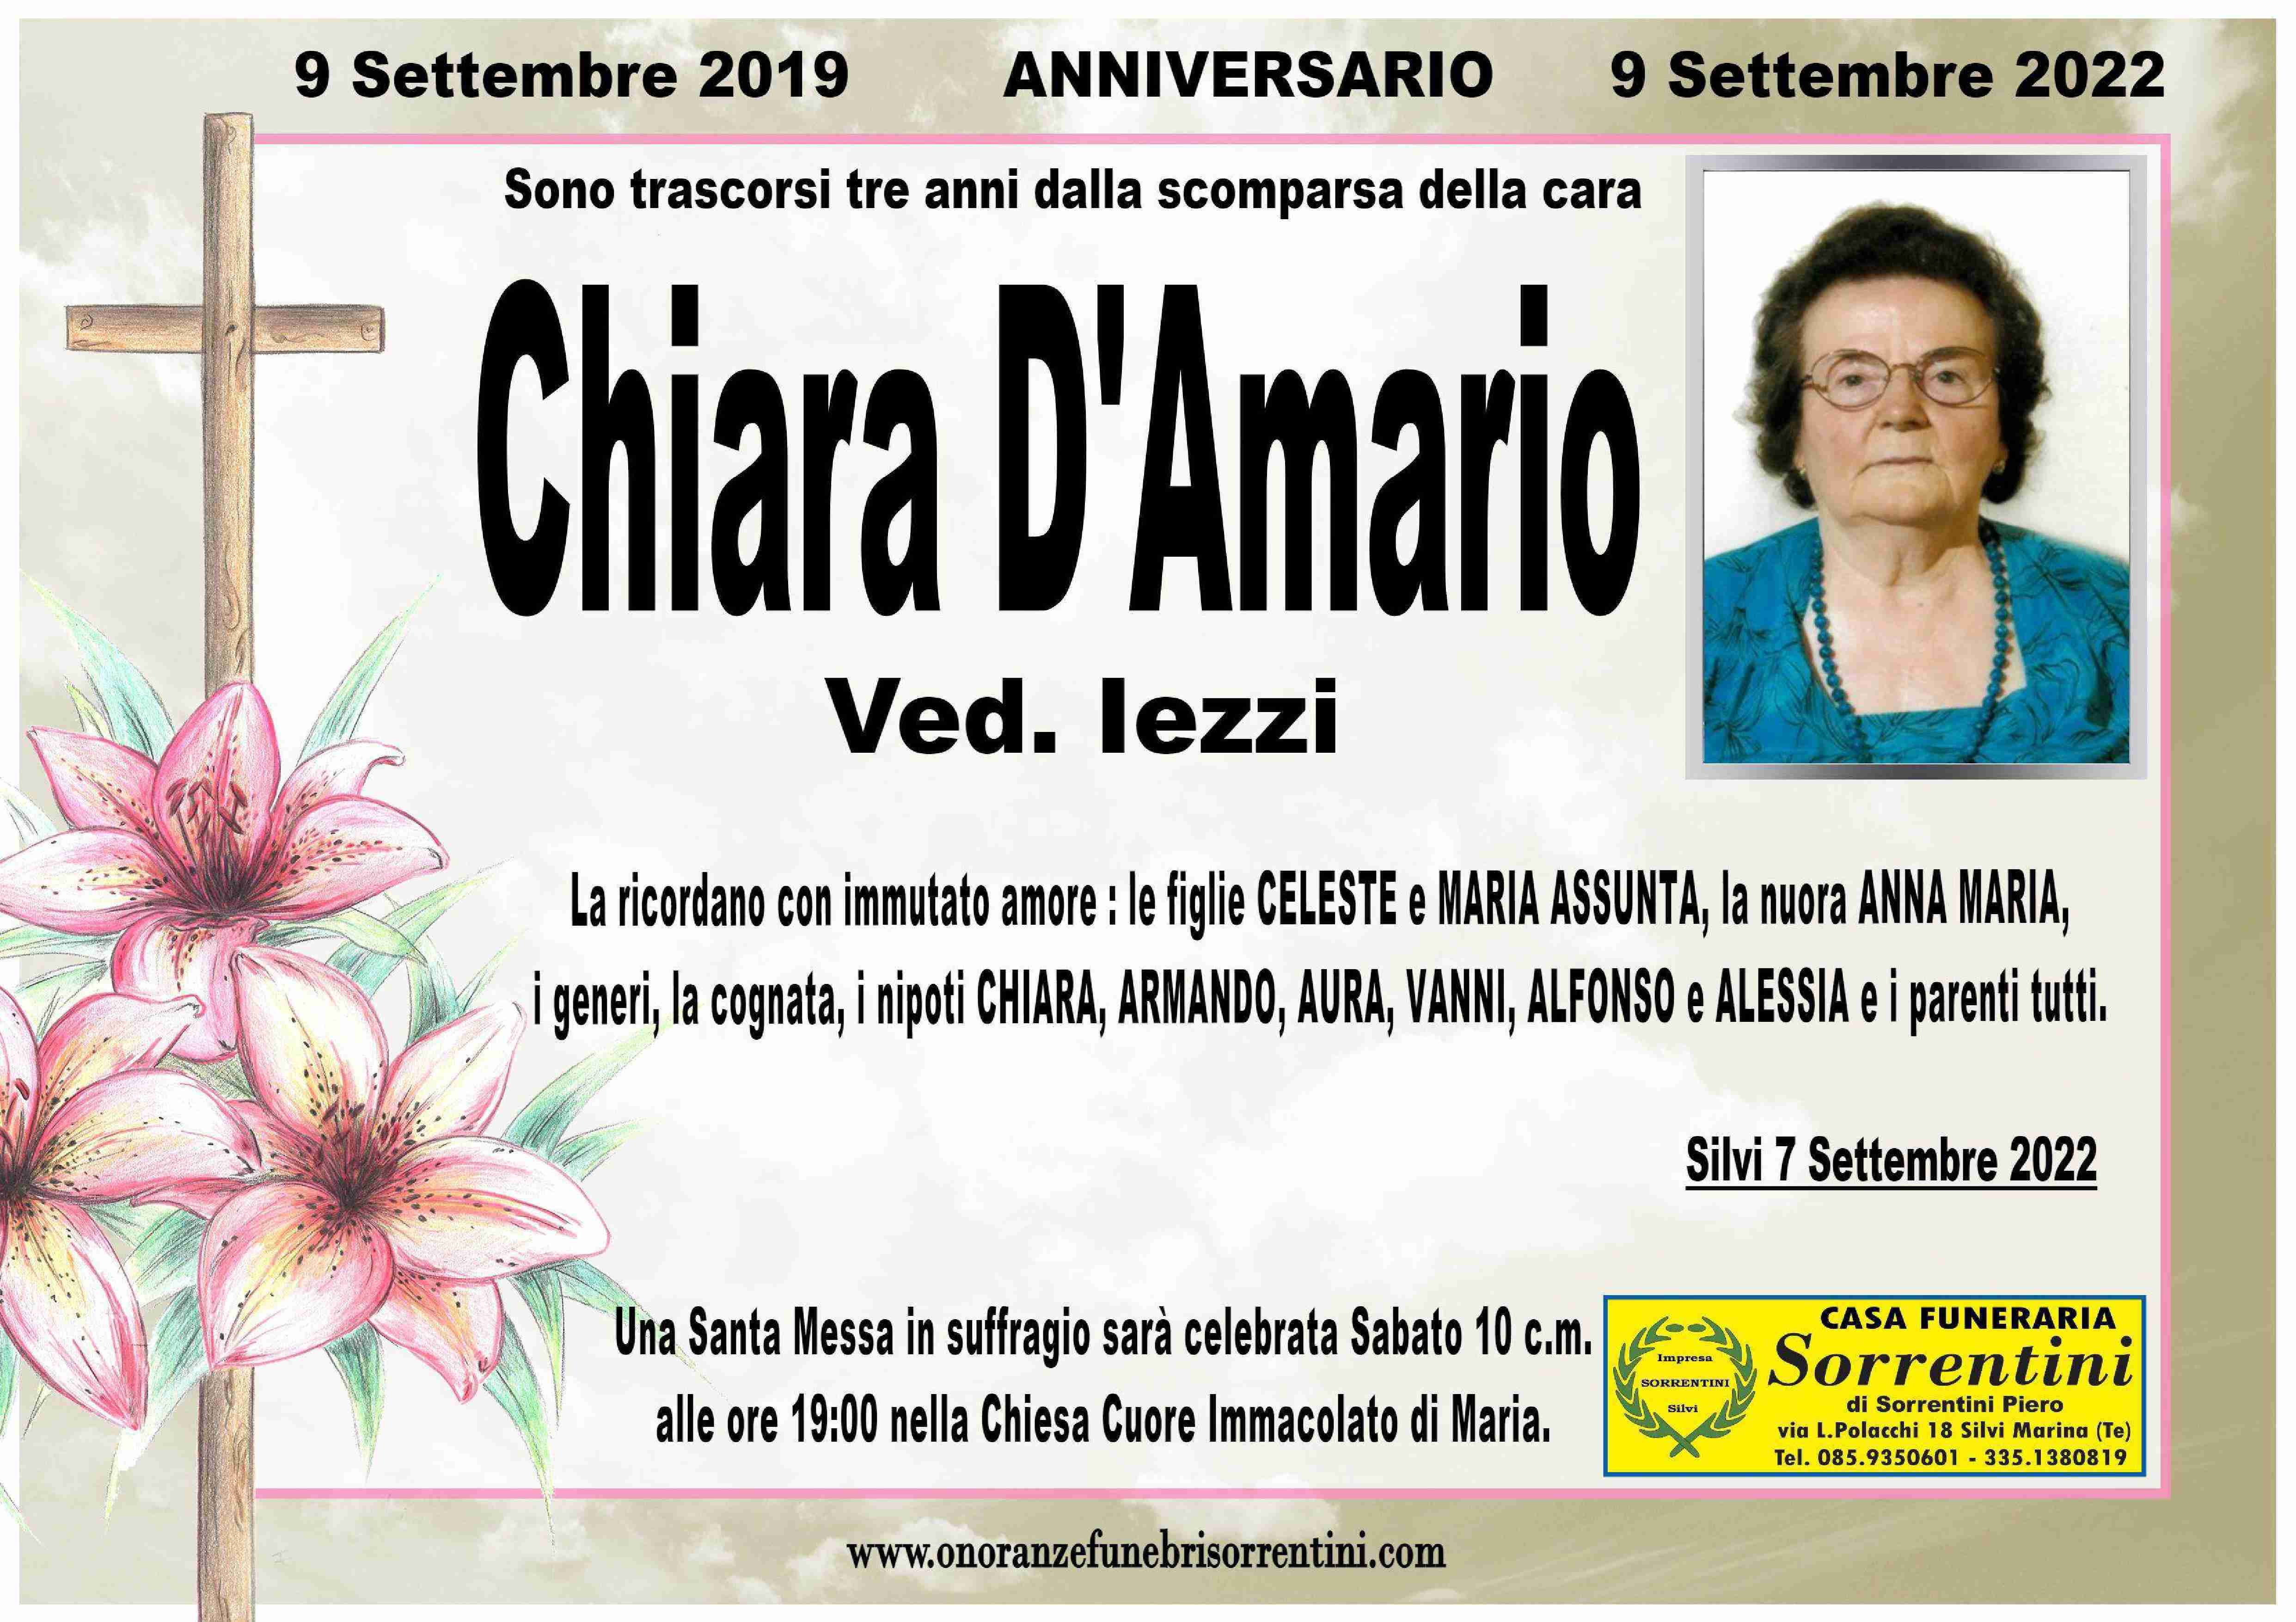 Chiara D'Amario